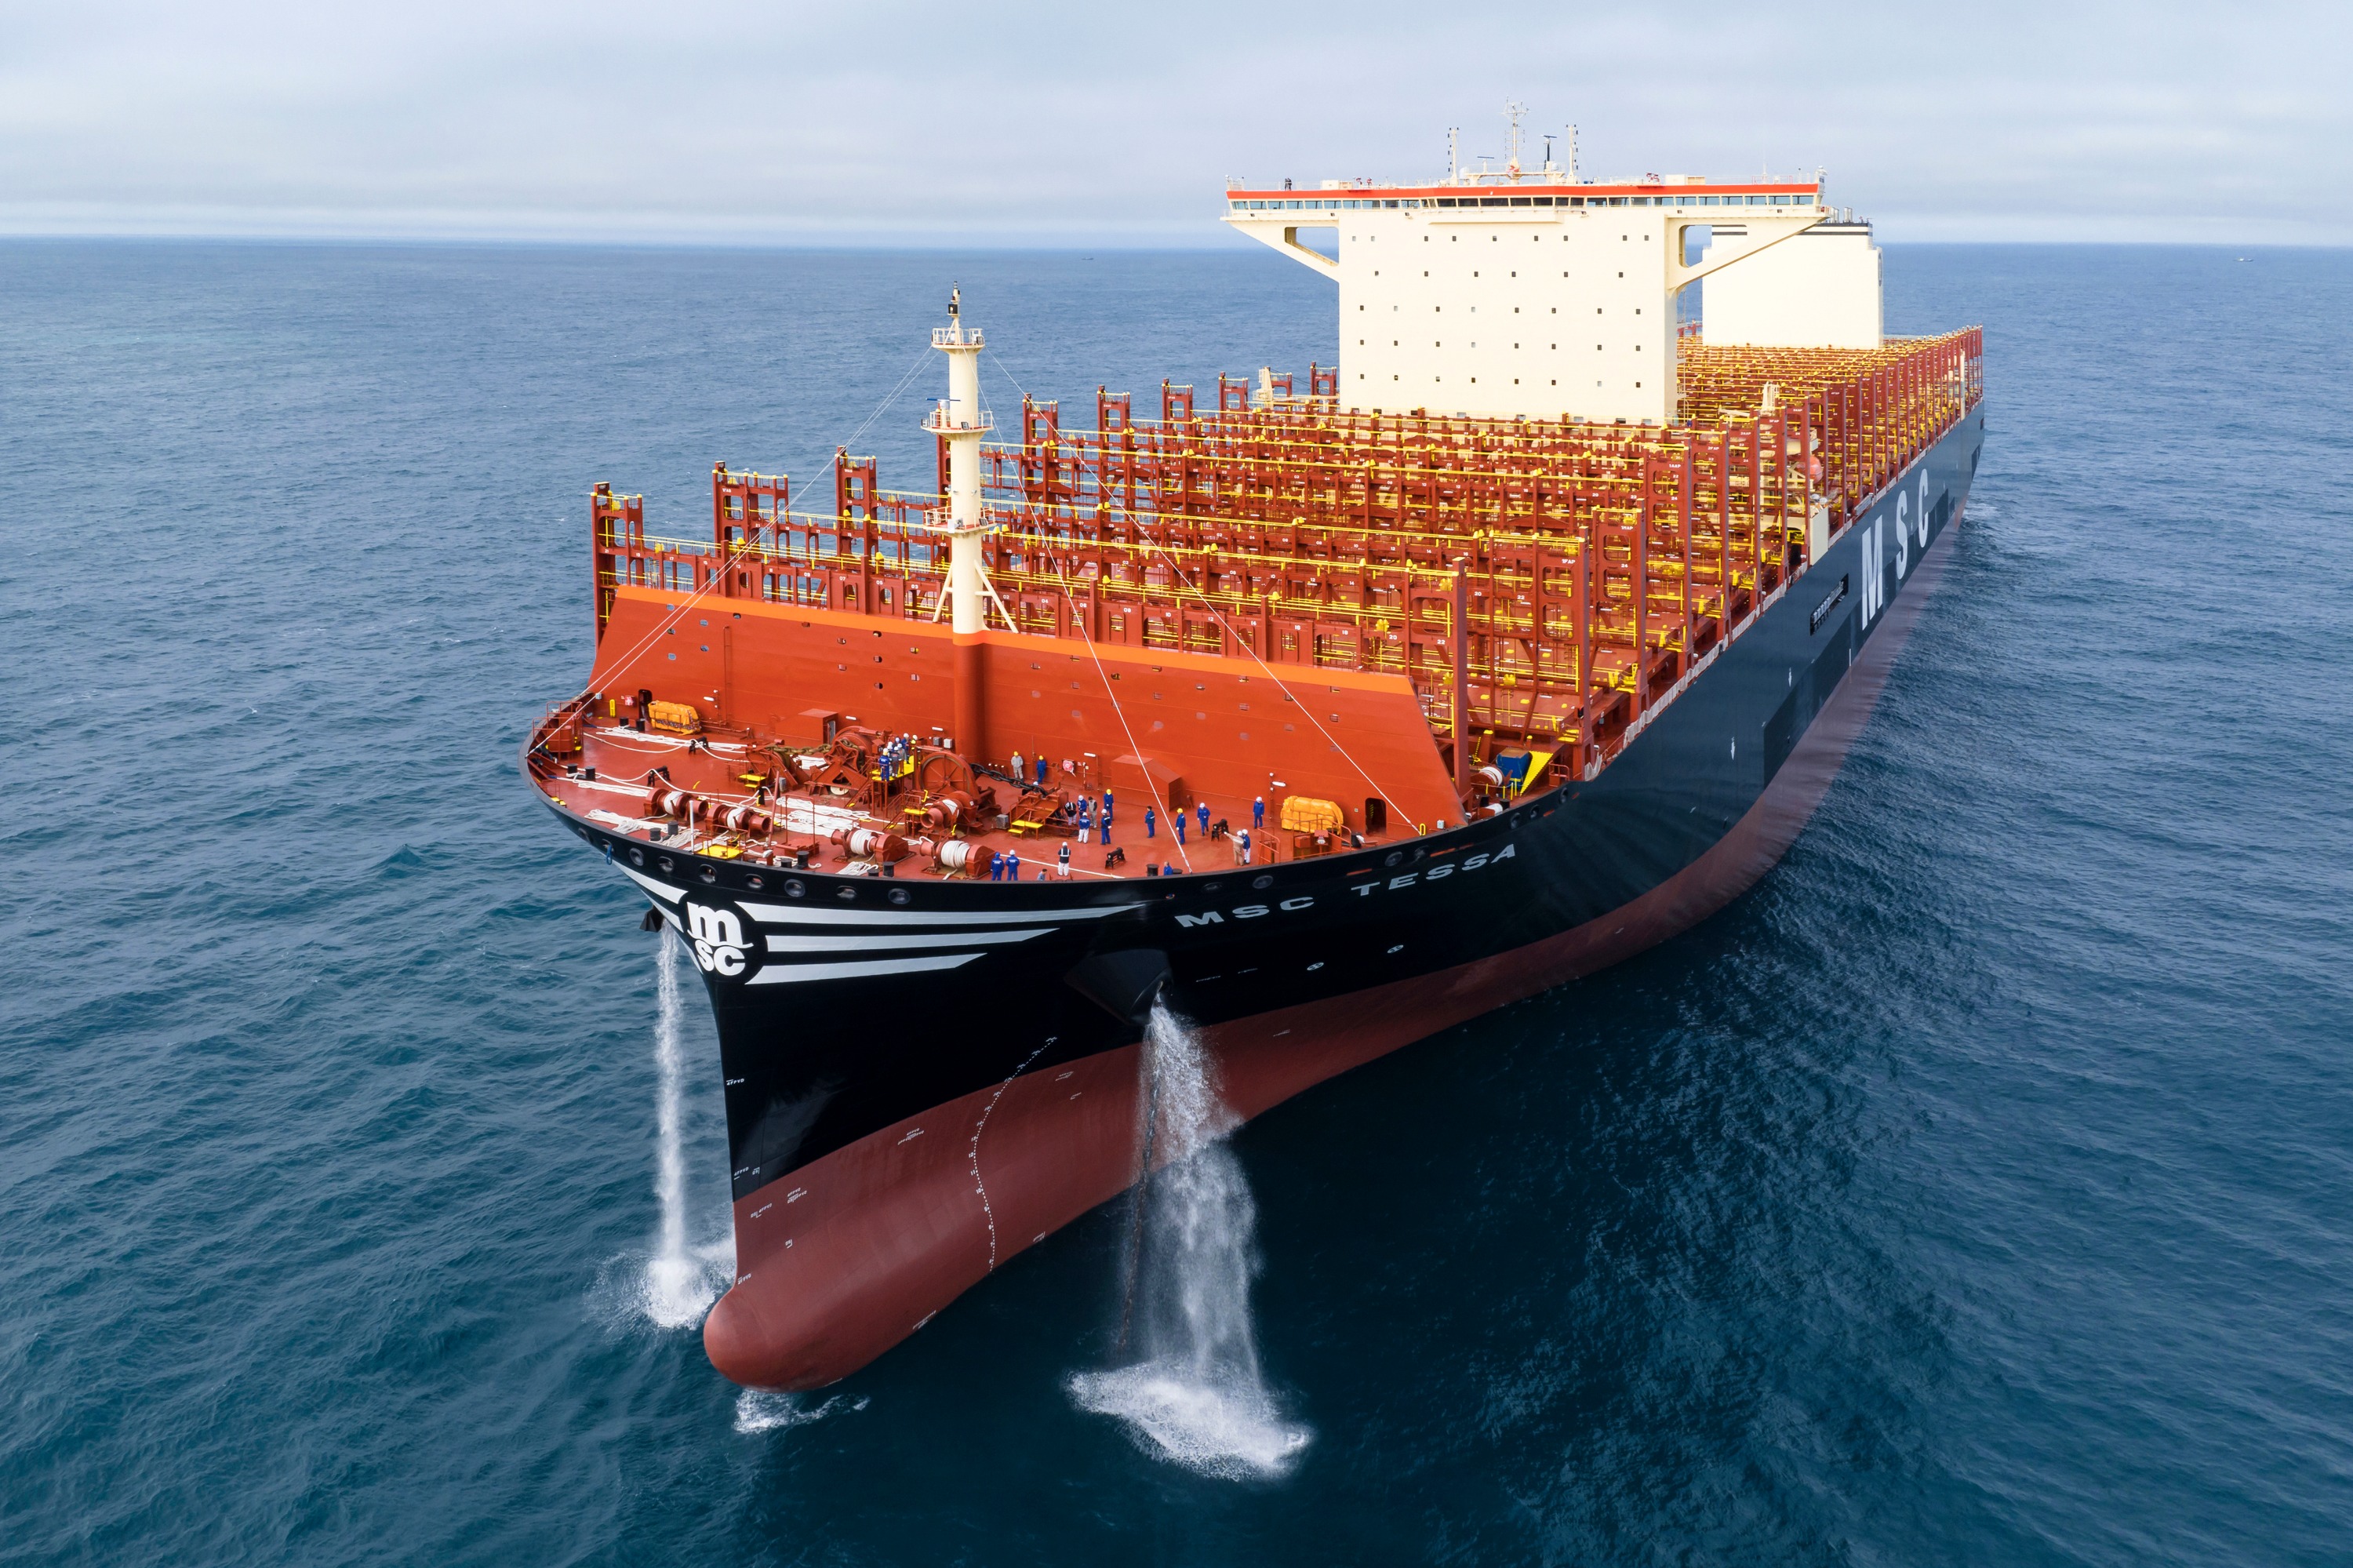 海上带货王刷新记录,全球最大级别集装箱船交付